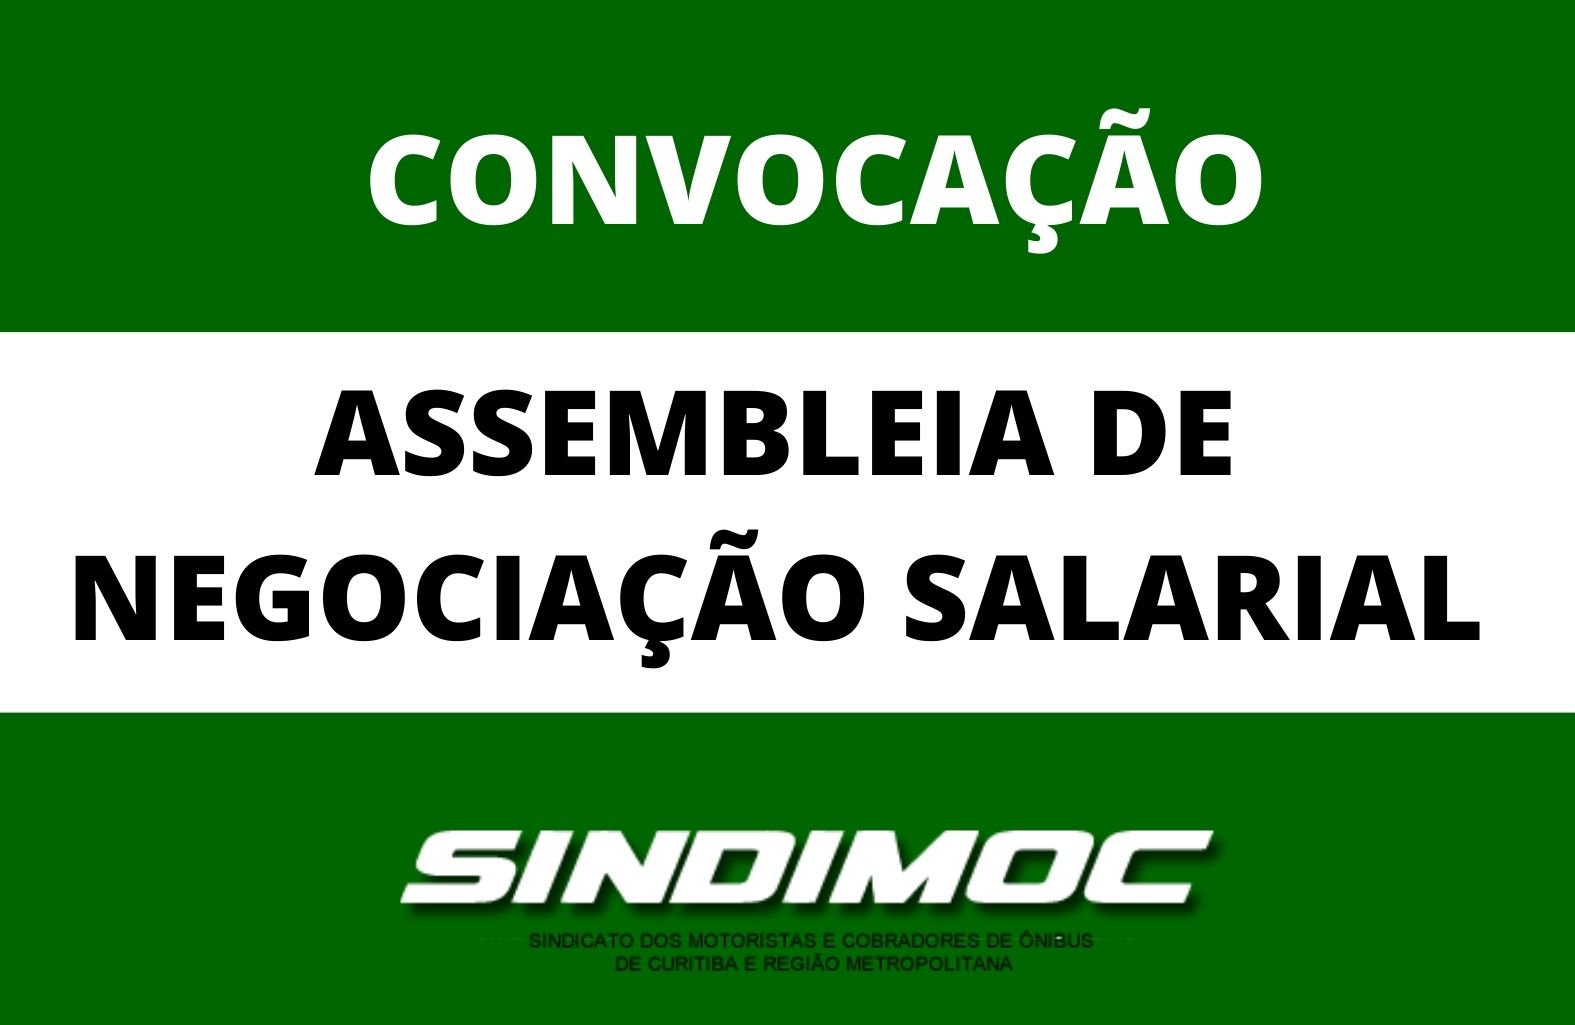 Sindimoc convoca categoria para assembleia de negociação salarial na quinta-feira, 28 de janeiro